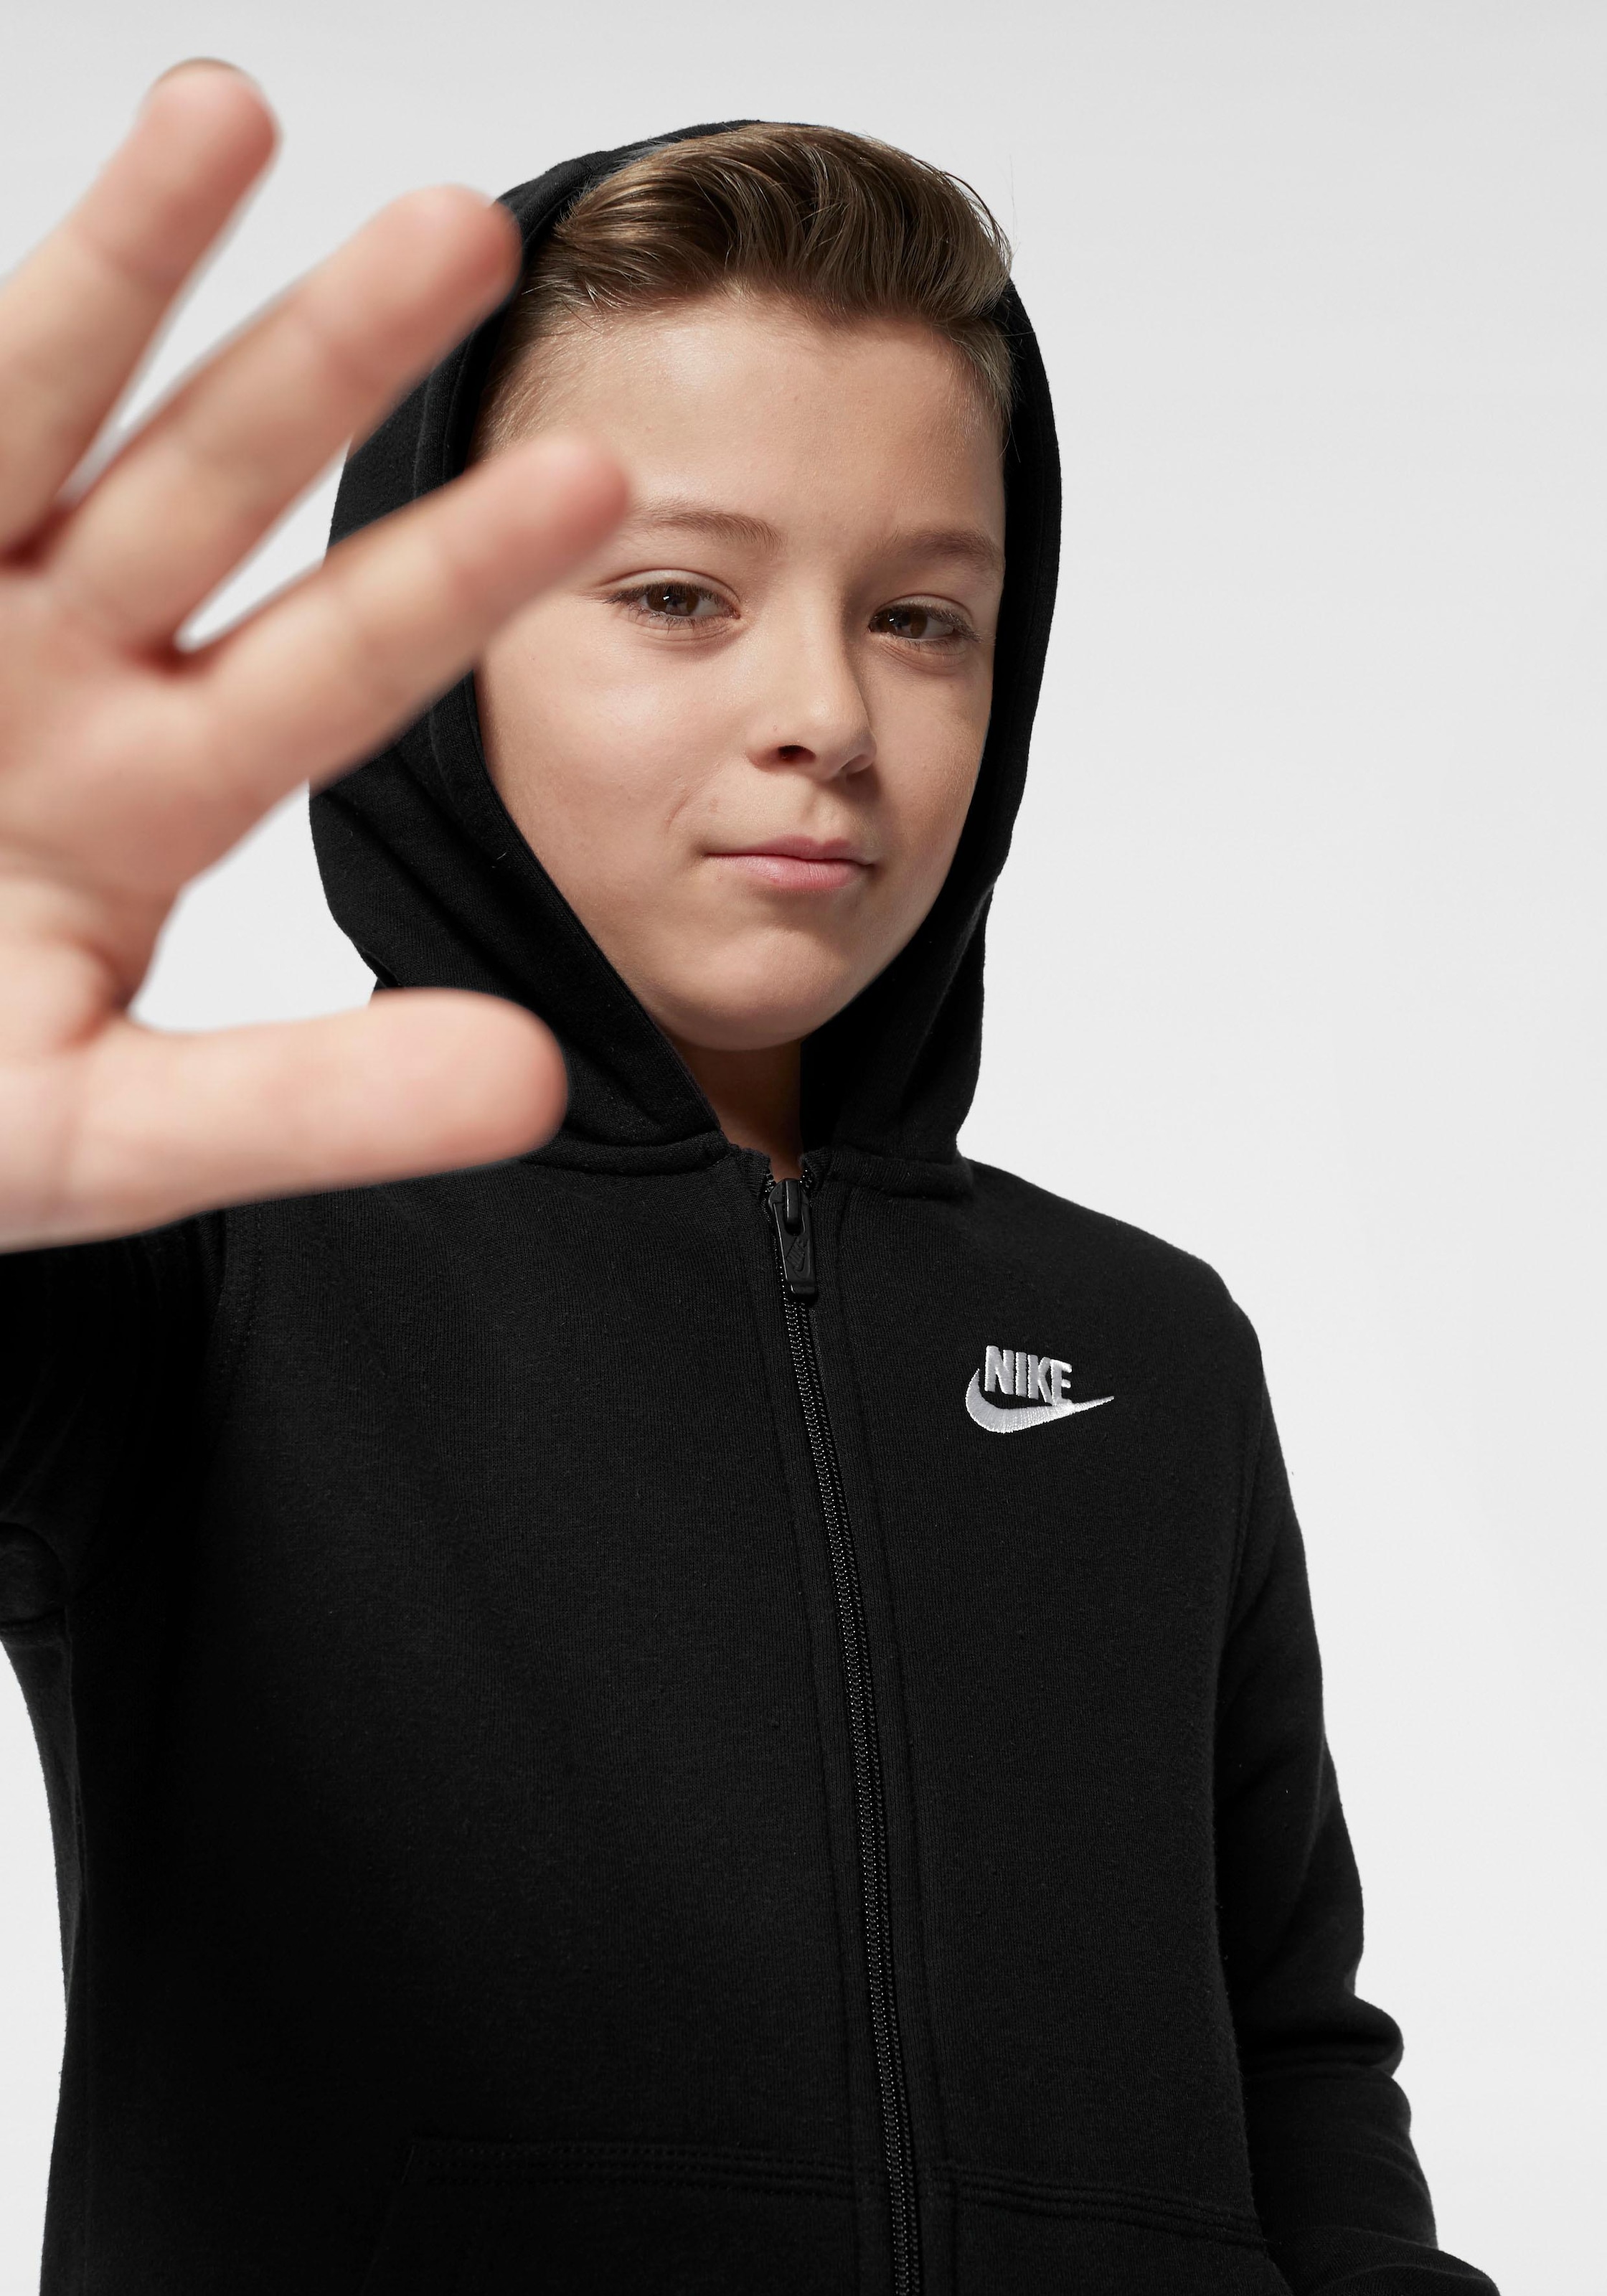 Trendige Nike Sportswear Kapuzensweatjacke »NSW HOODIE FZ CLUB - für Kinder«  versandkostenfrei - ohne Mindestbestellwert shoppen